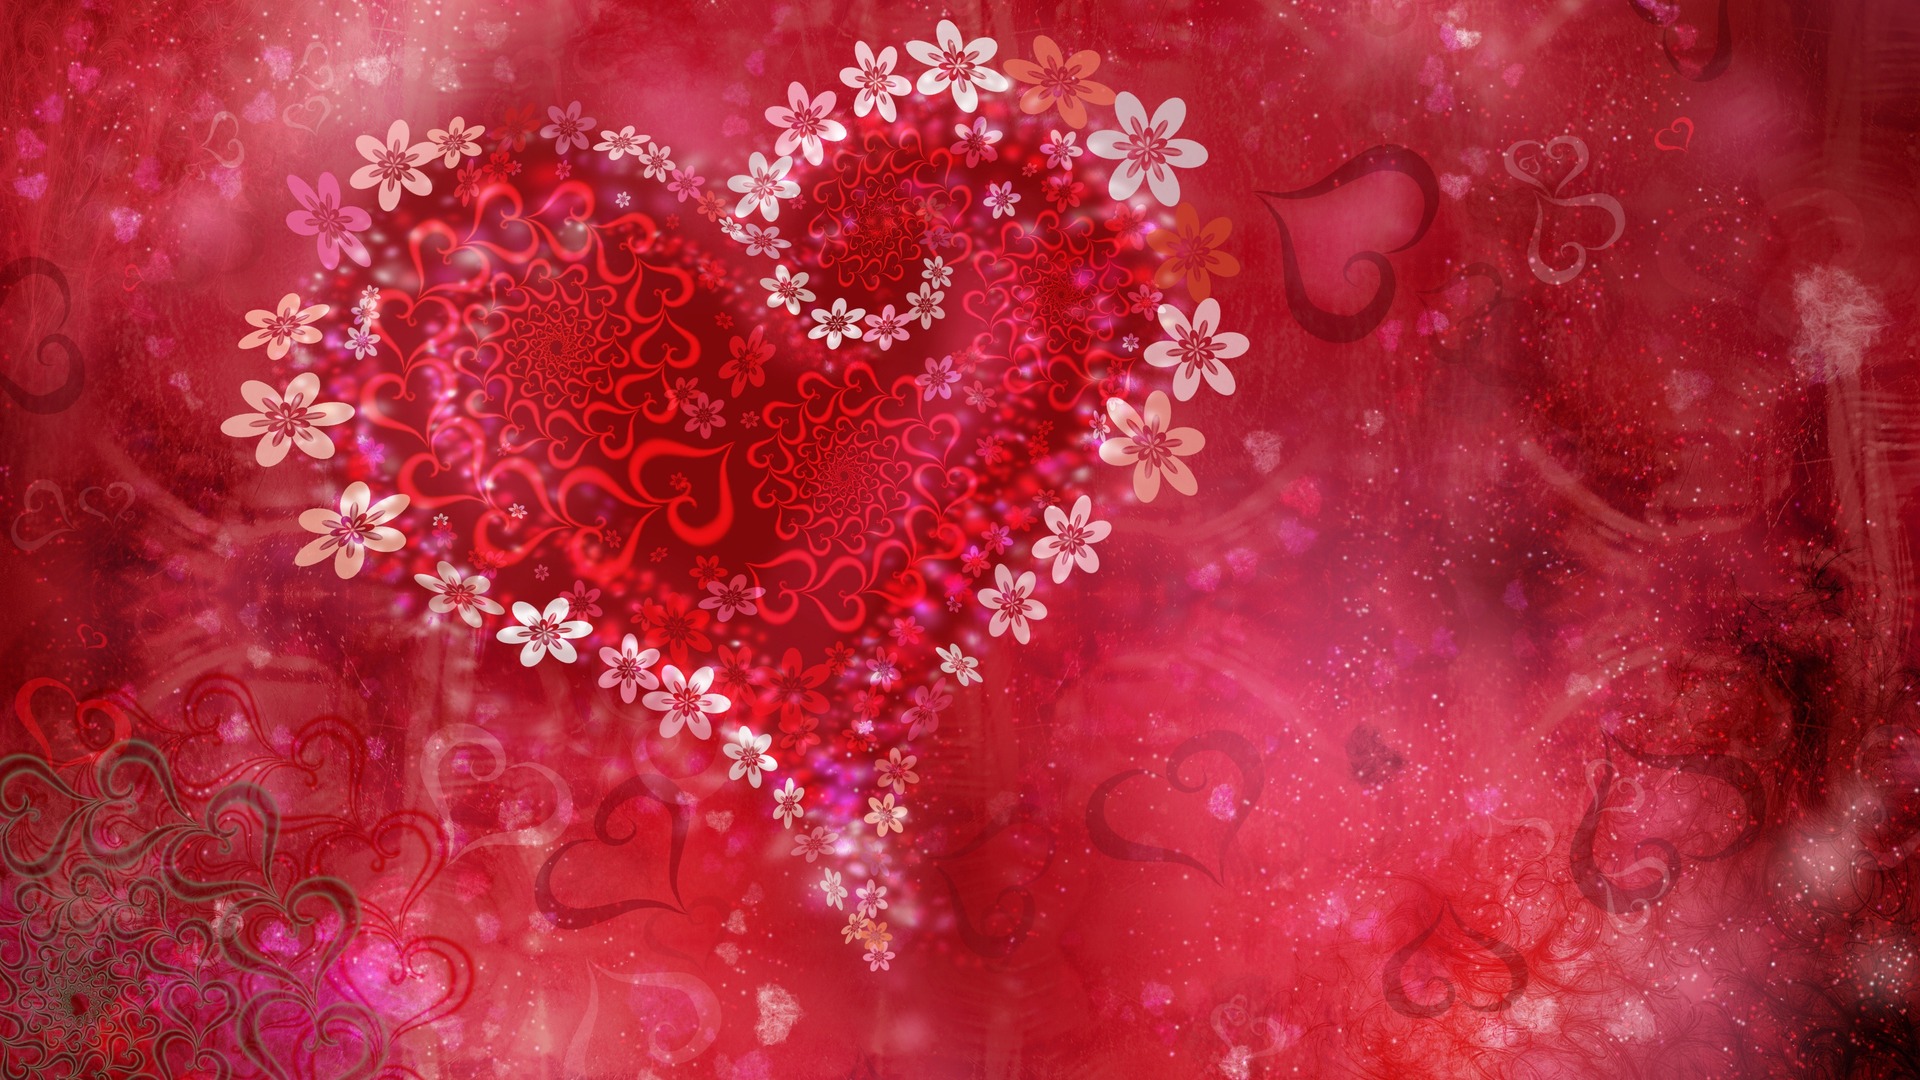 Love Heart Flowers HD Wallpaper Valentine